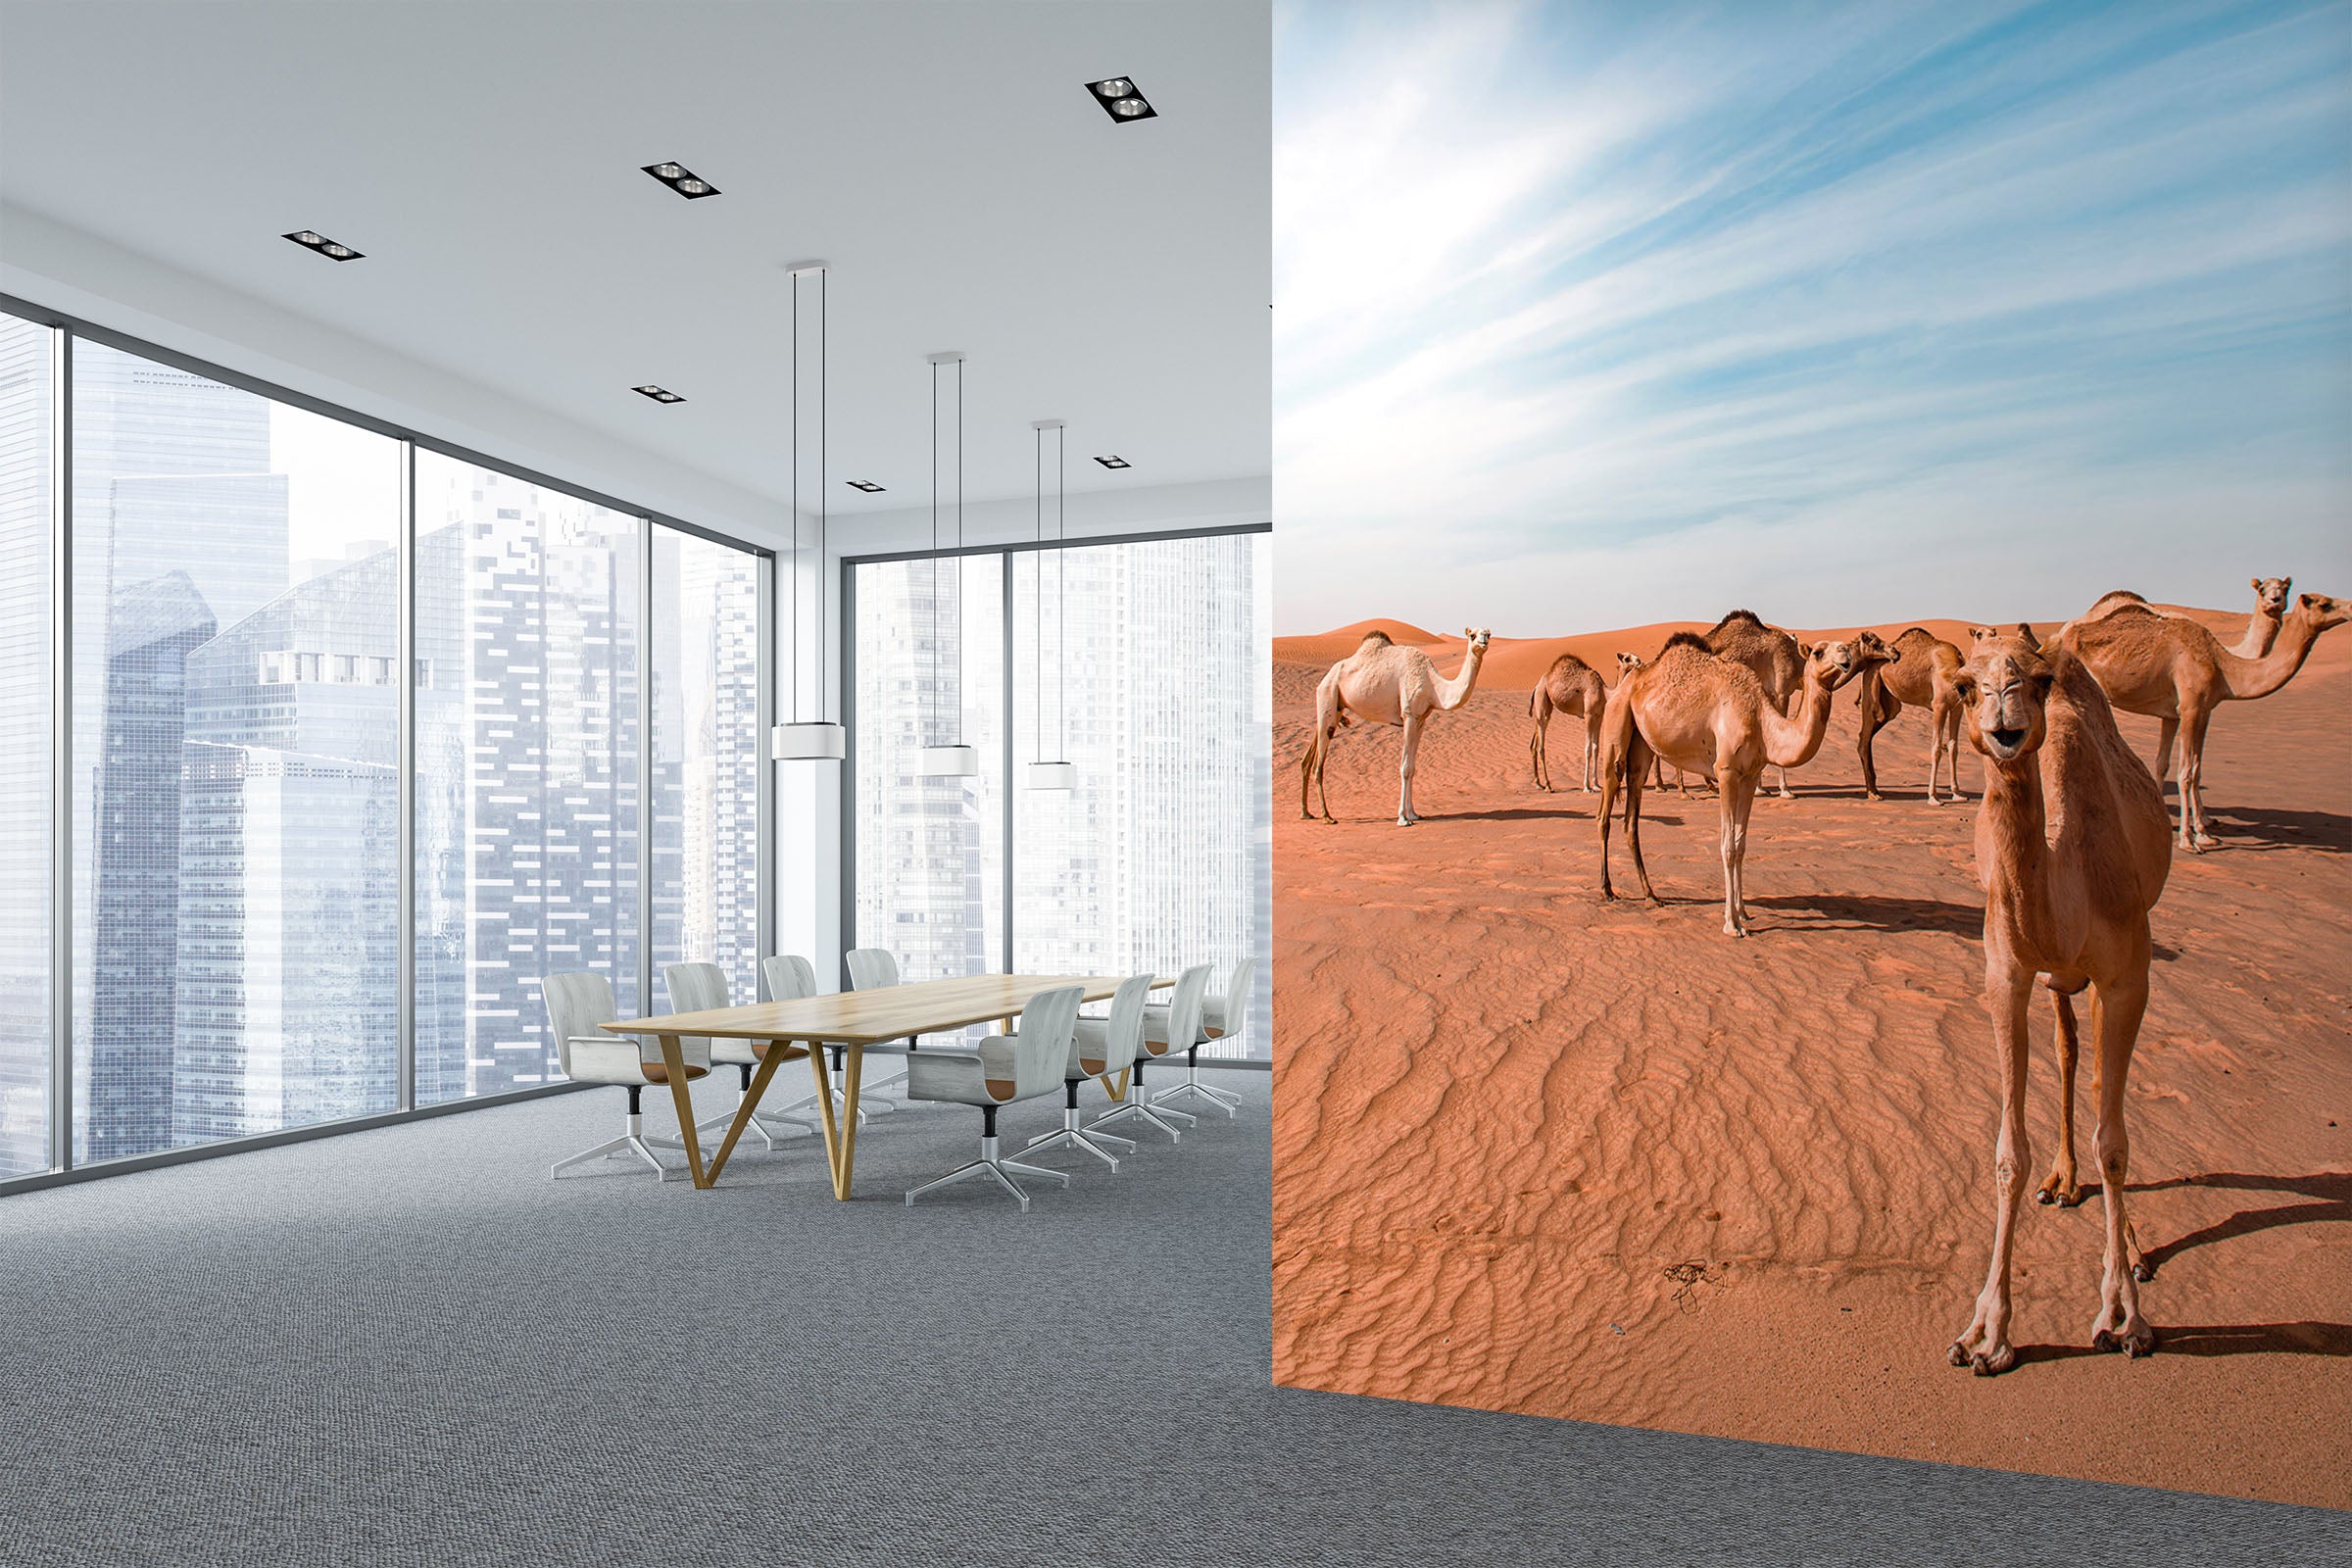 3D Desert Camel 101 Wall Murals